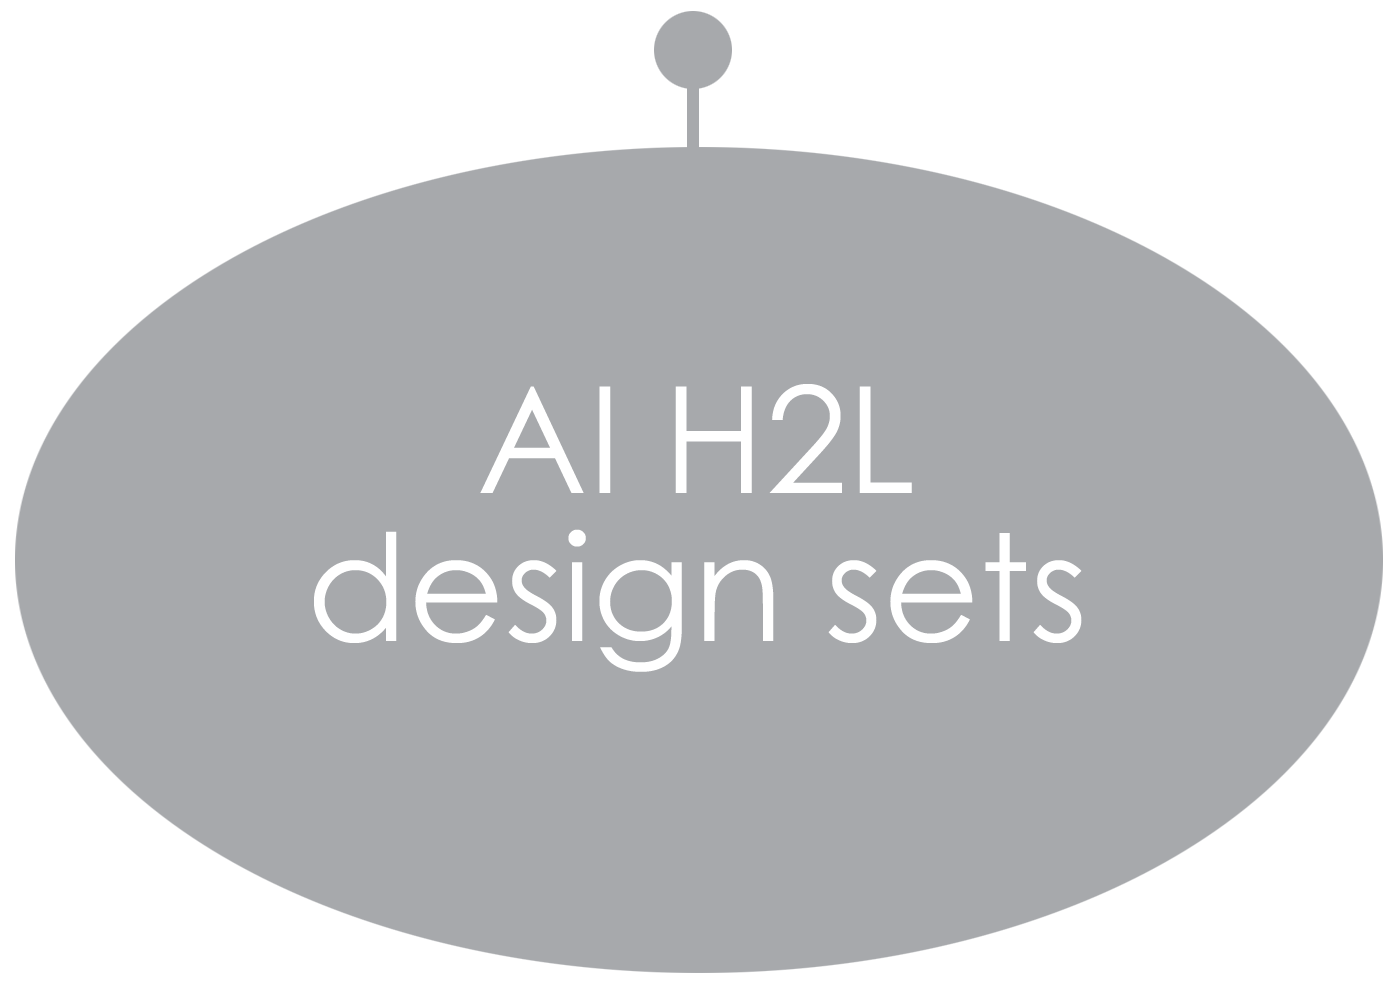 AI H2L